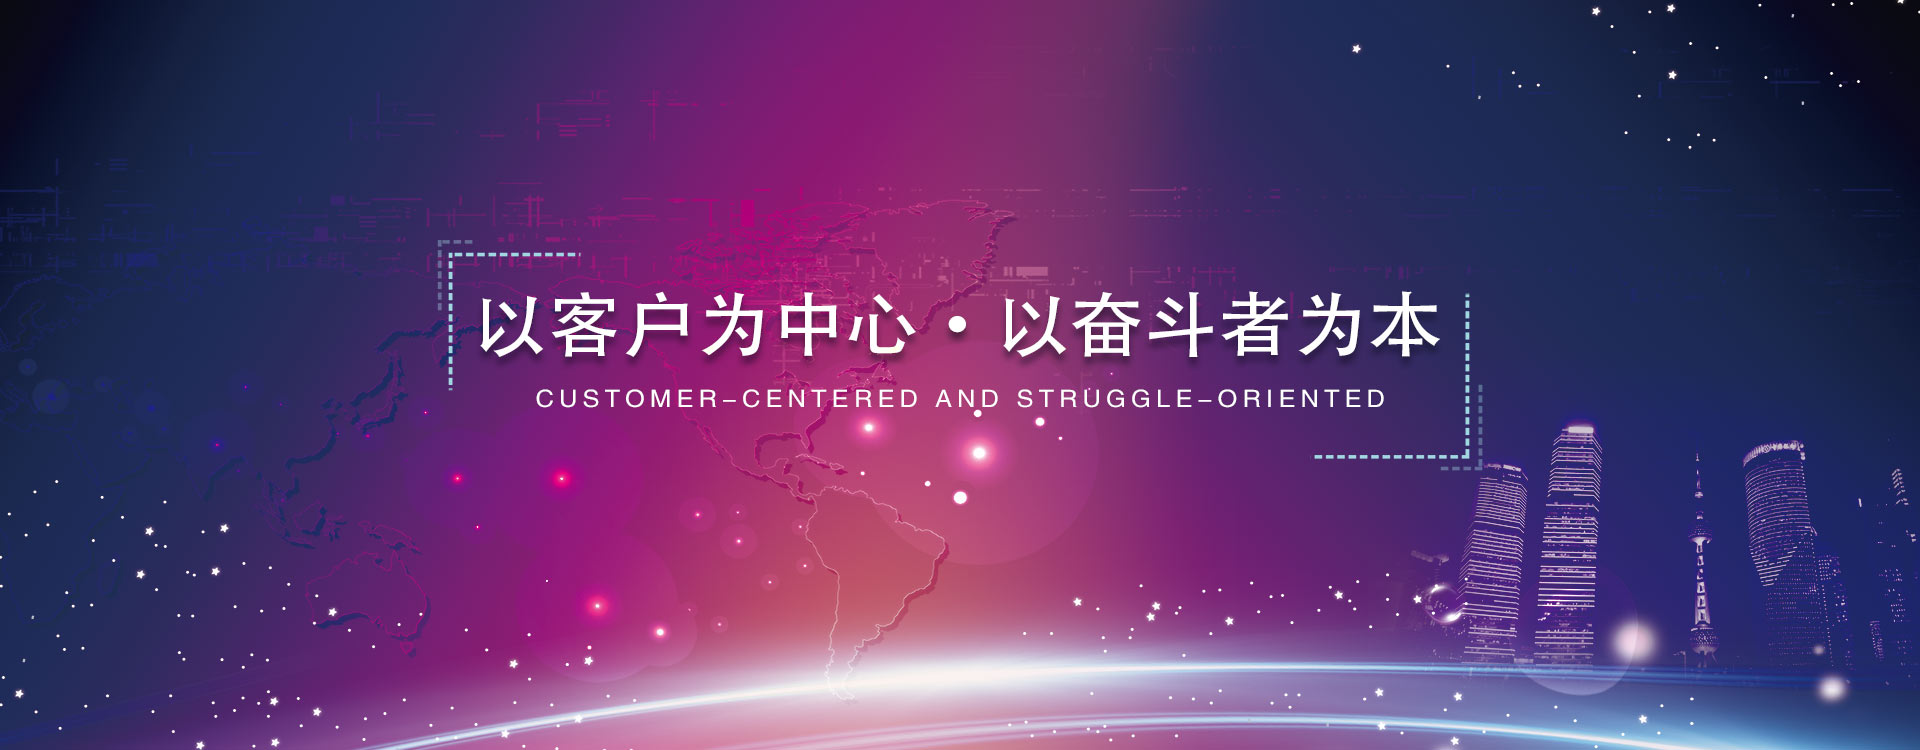 乐动·LDSports综合体育(中国)官方网站值核心